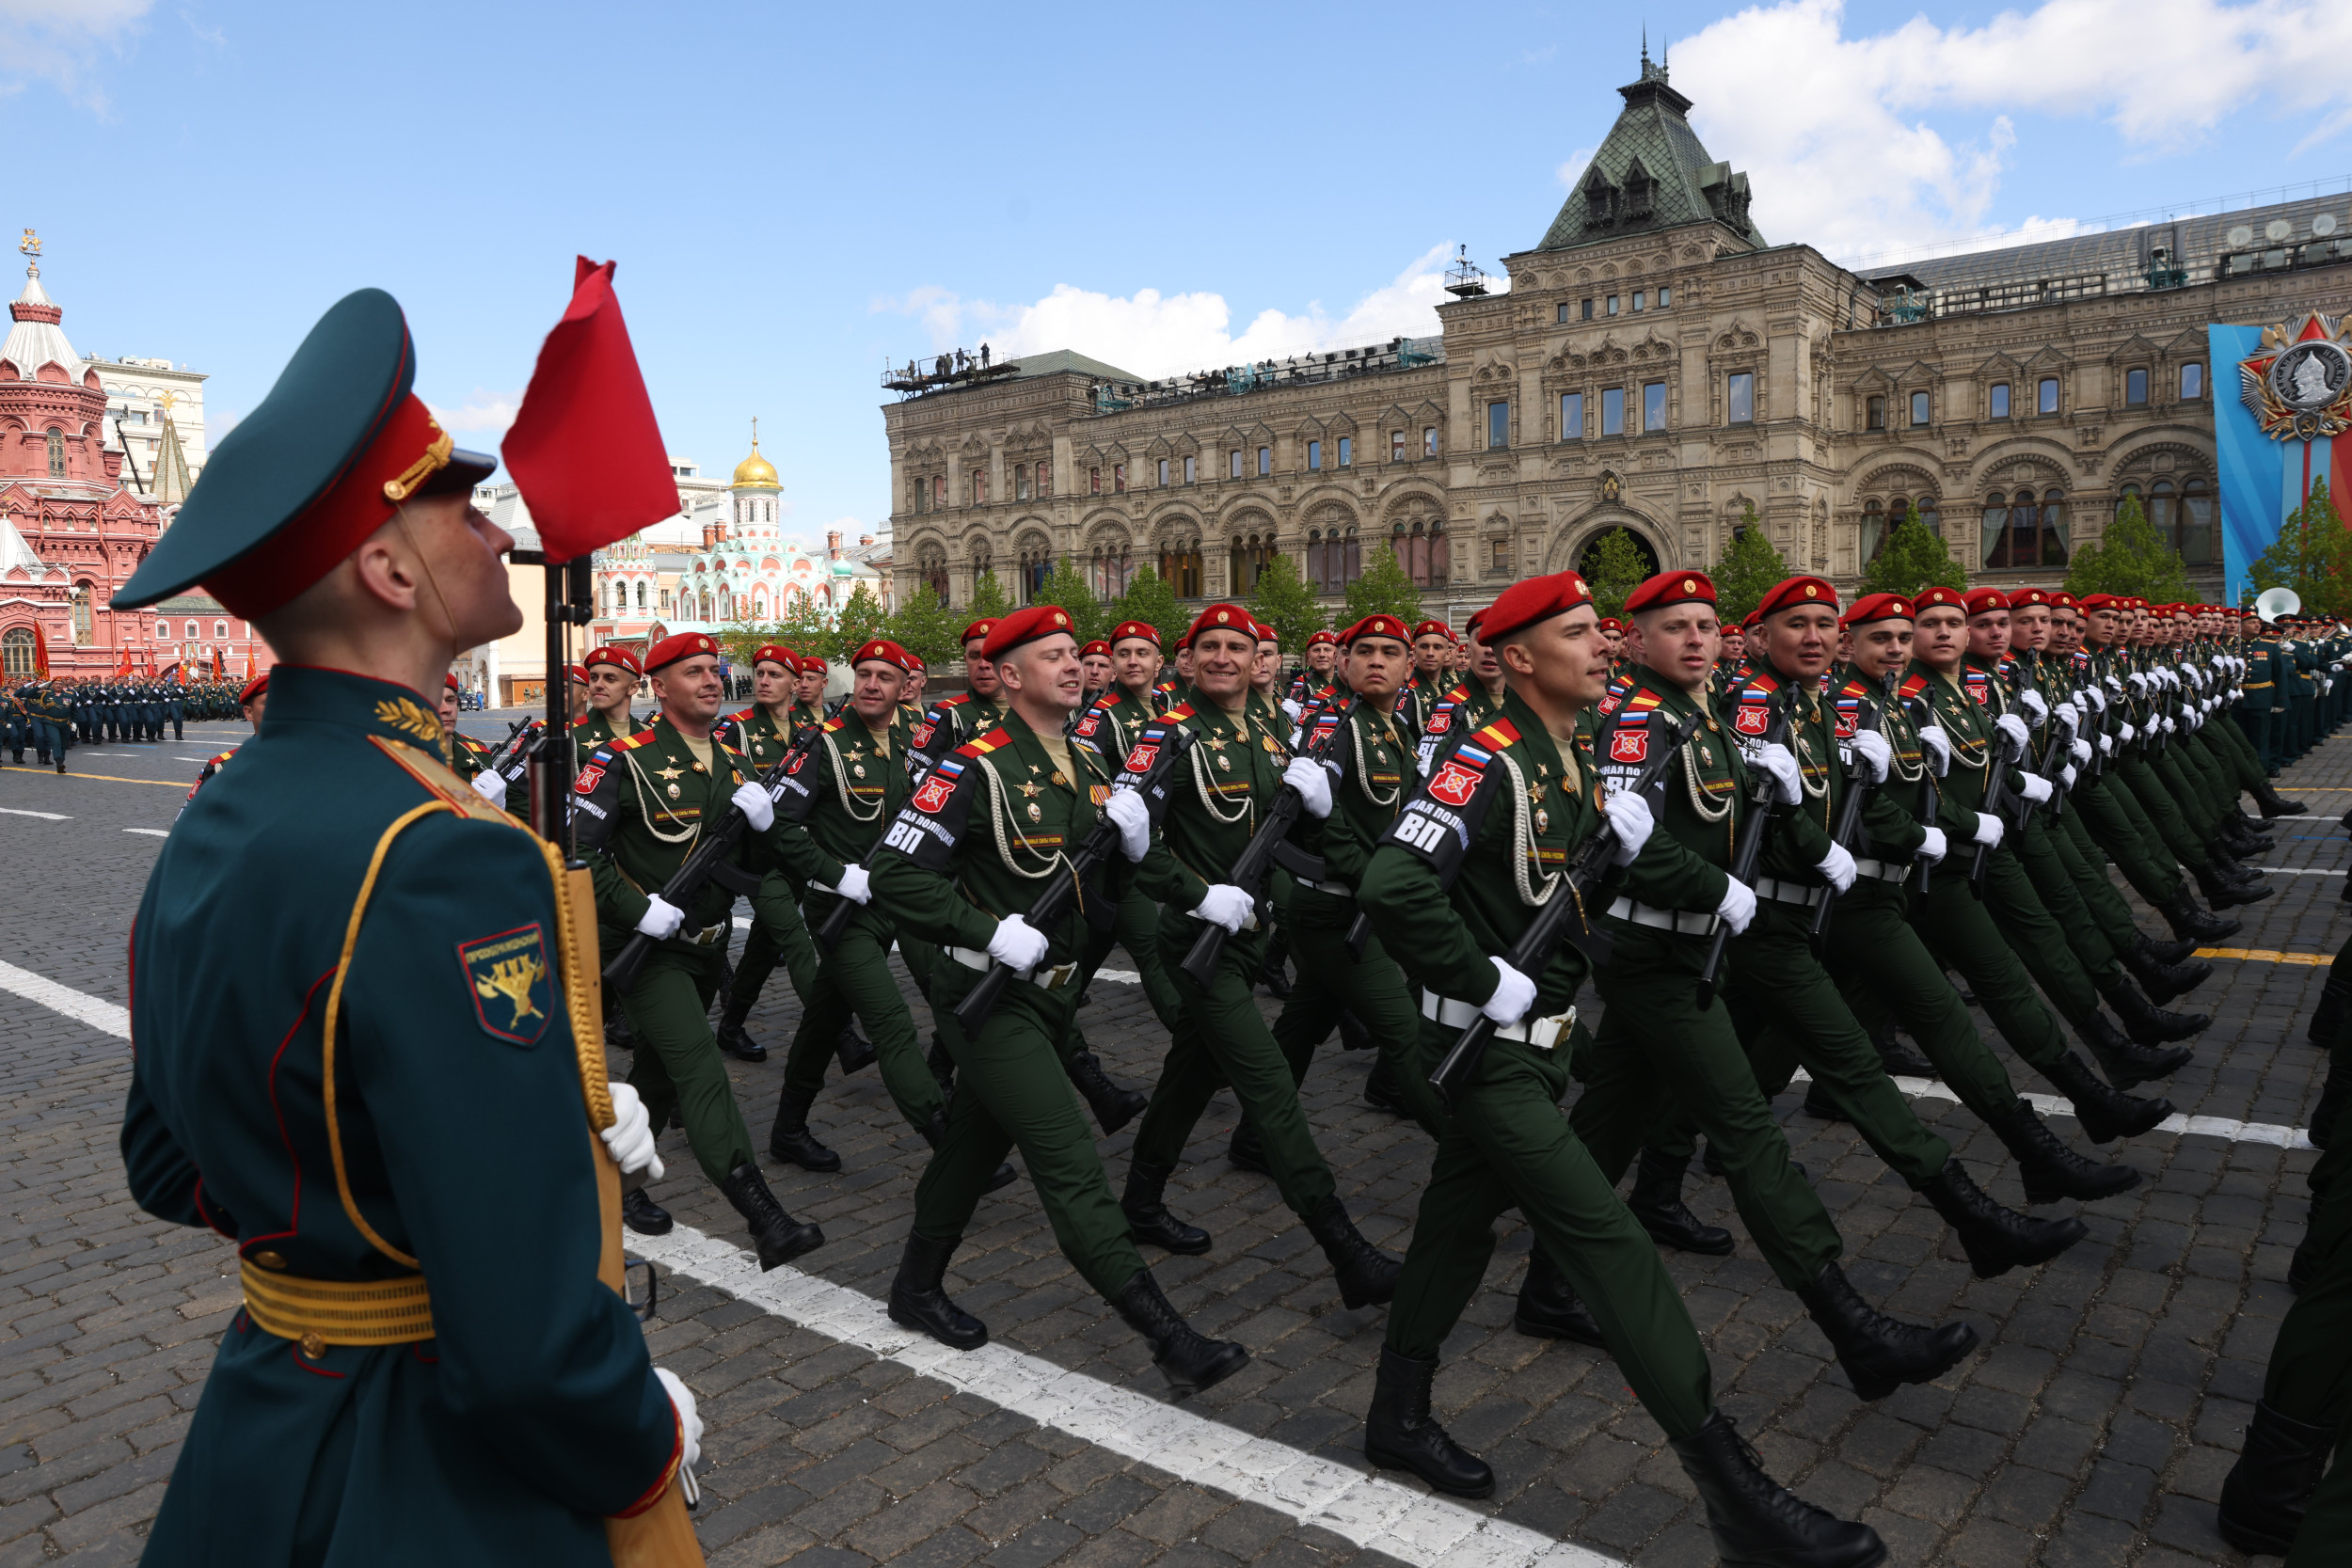 Rosja jest gotowa rozpocząć ofensywę przeciwko krajowi NATO – ostrzega Polska